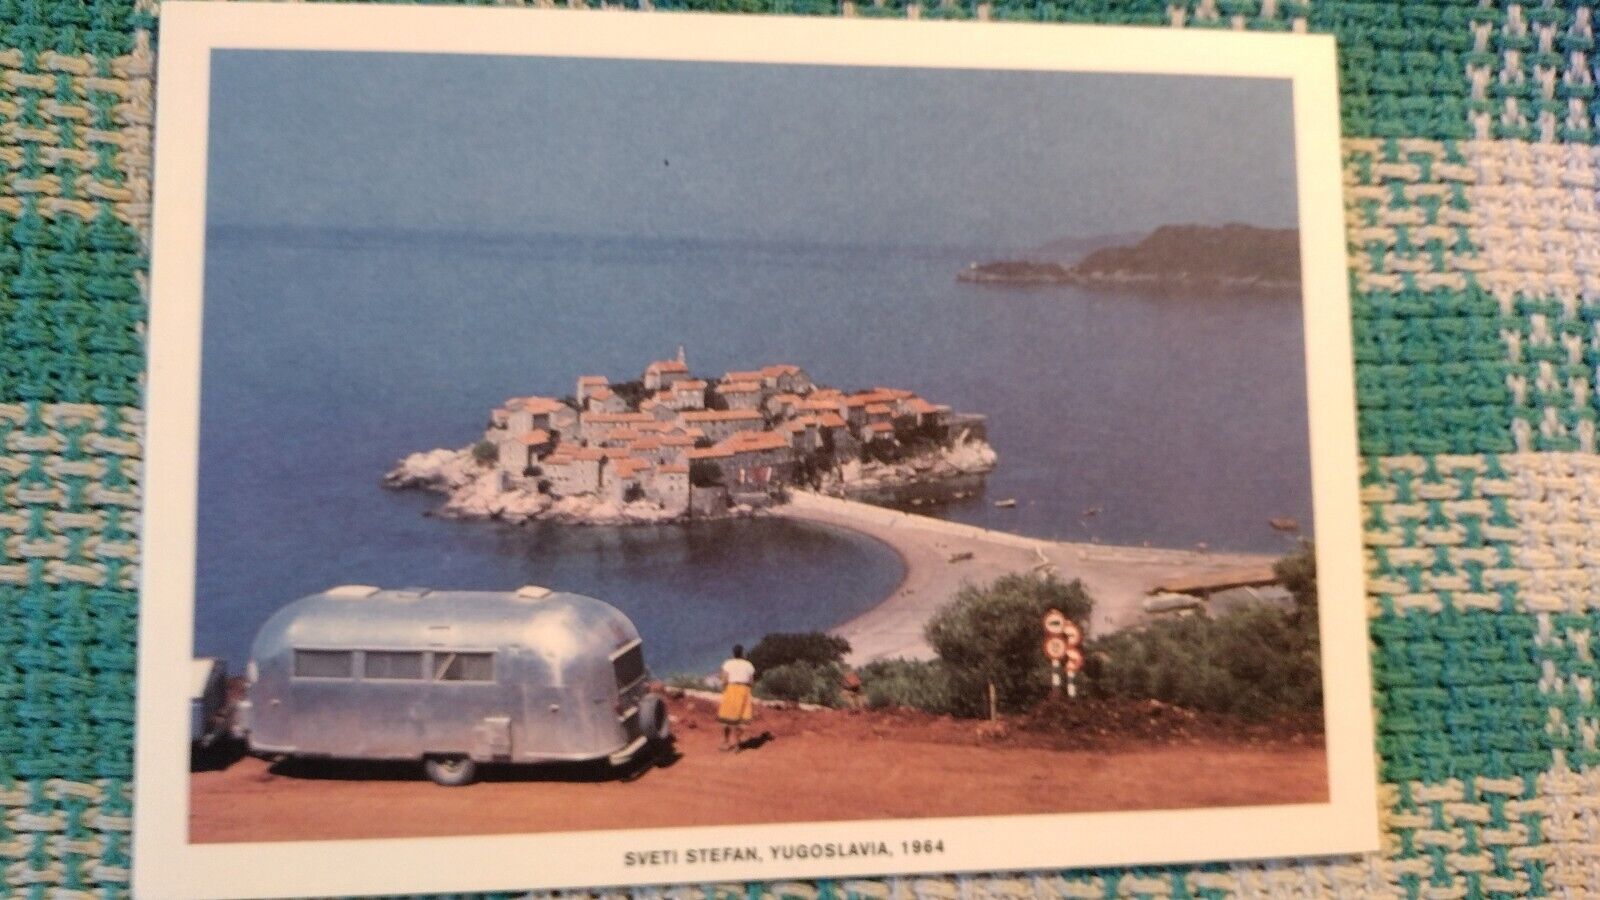 BEAUTIFUL POST CARD SVETI STEFAN YUGOSLAVIA 1964